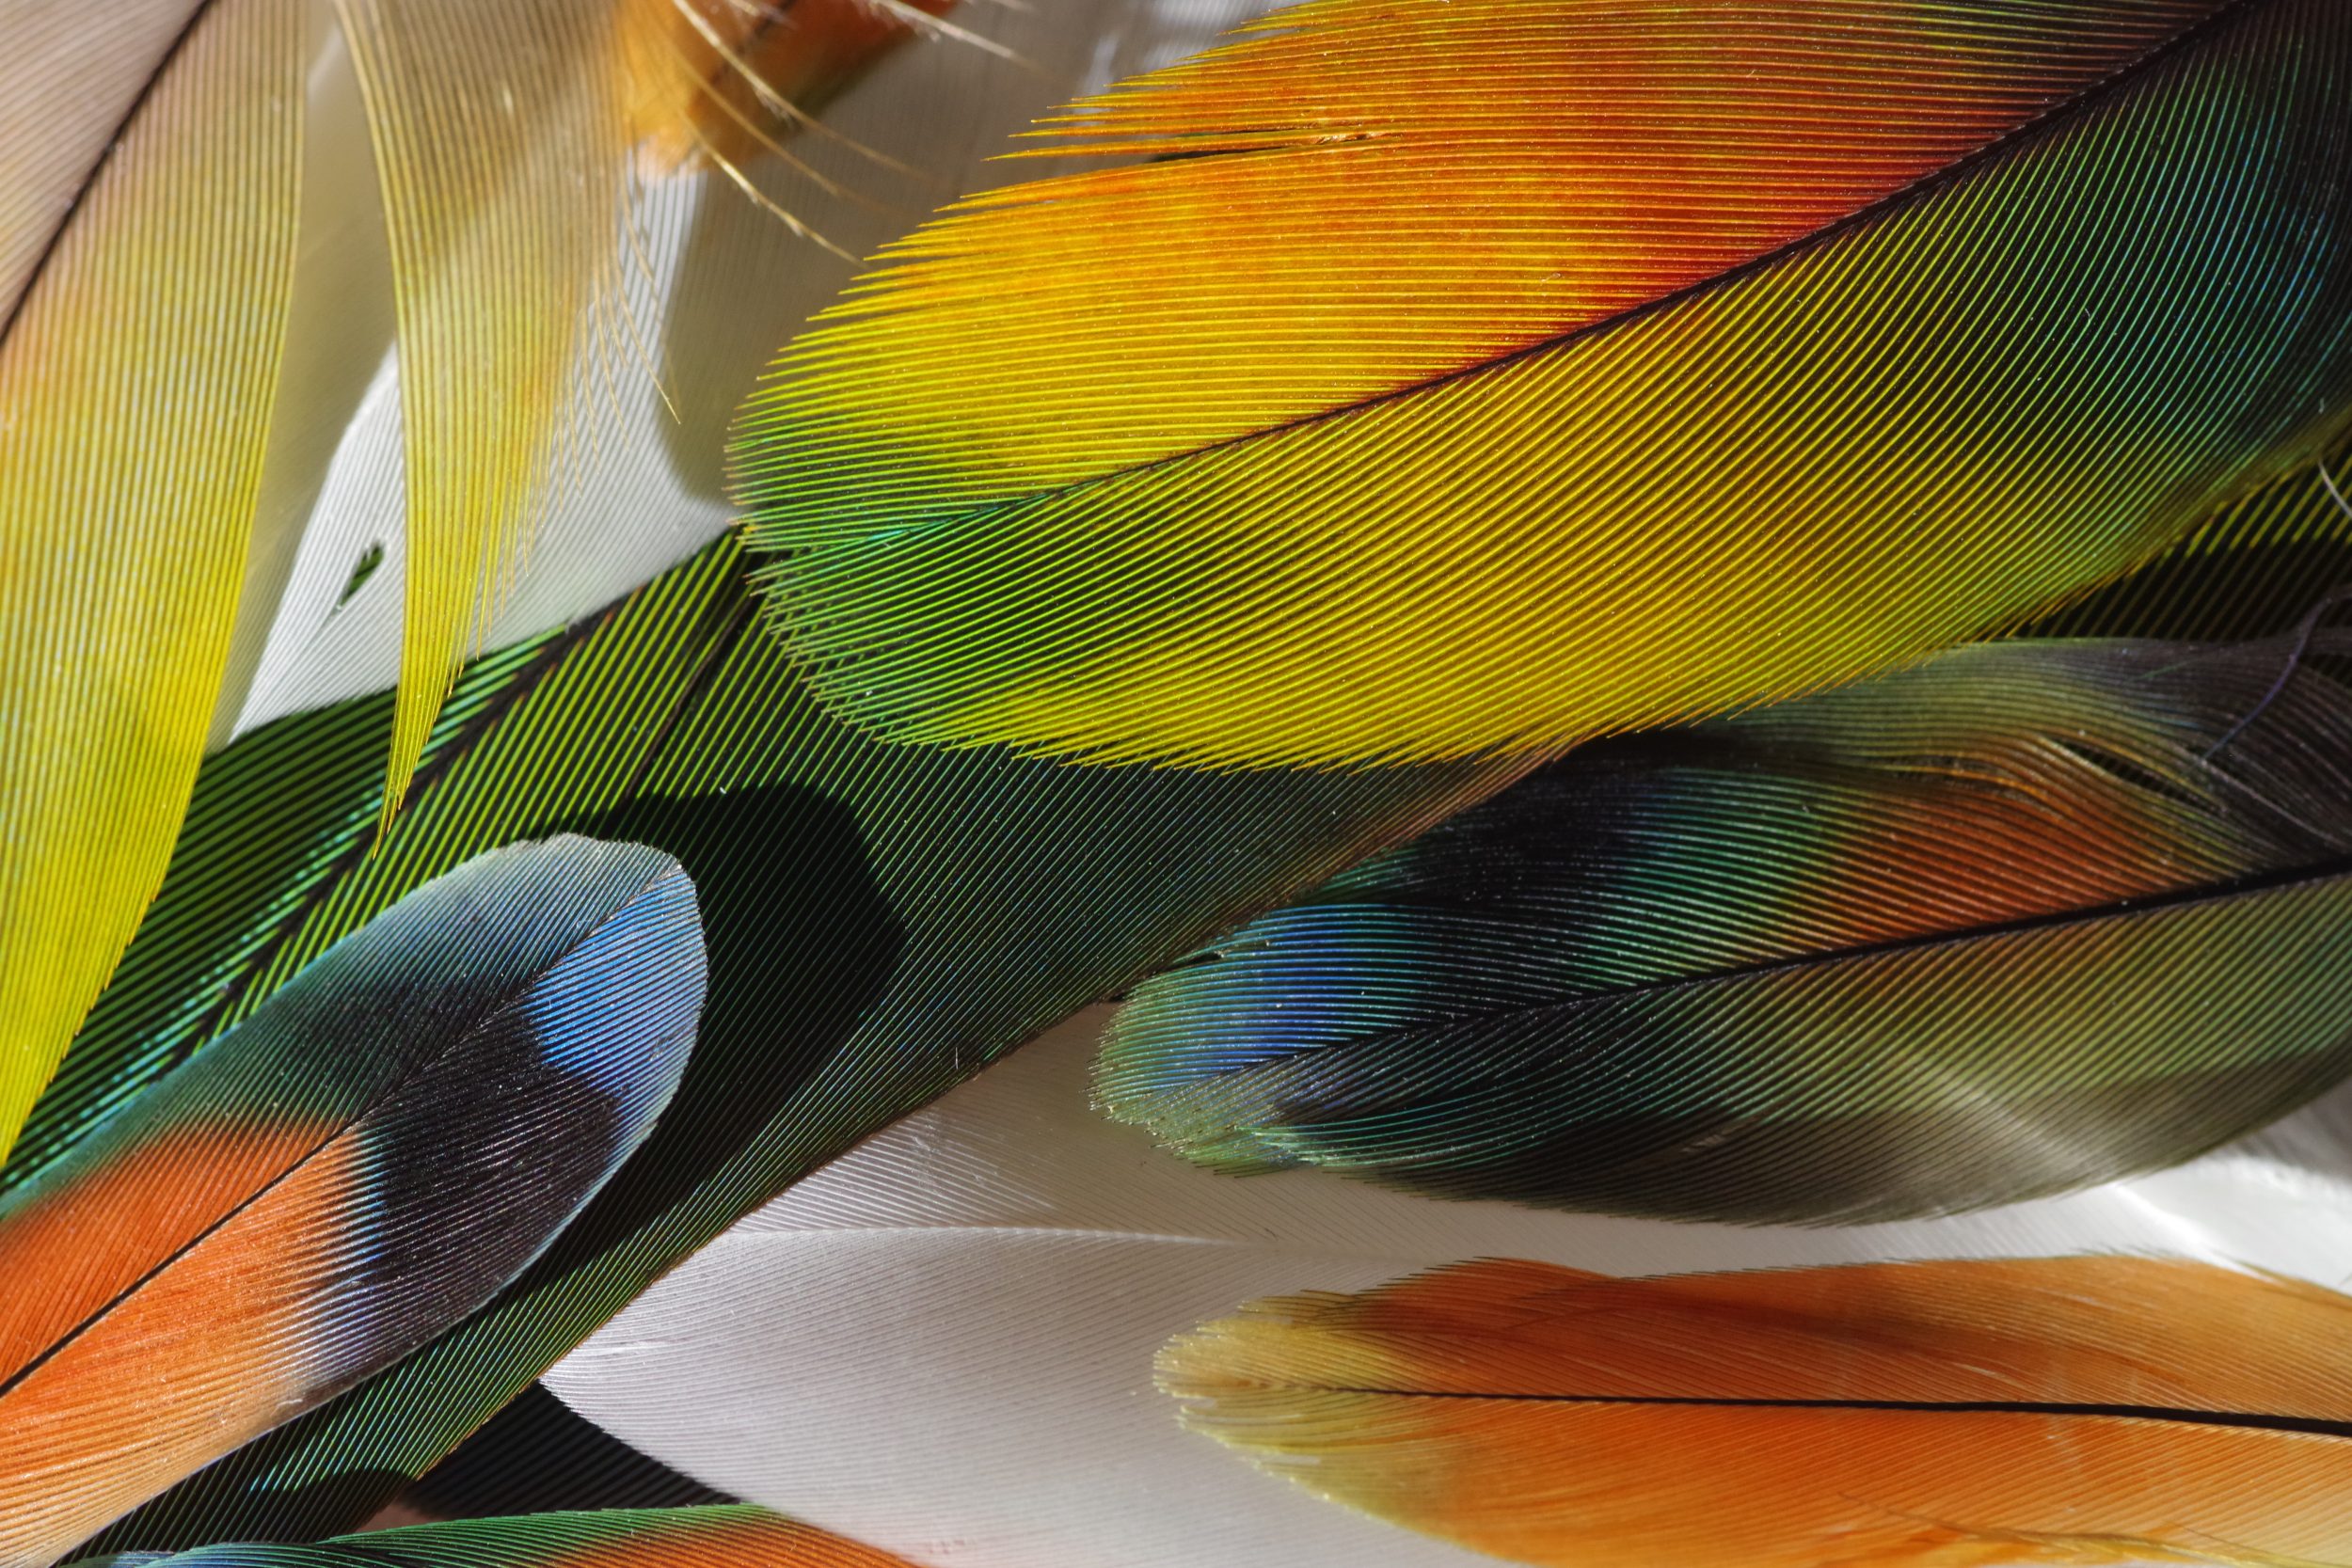 lot de plumes très colorées de perruches et perroquets : jaune, orange, vert...